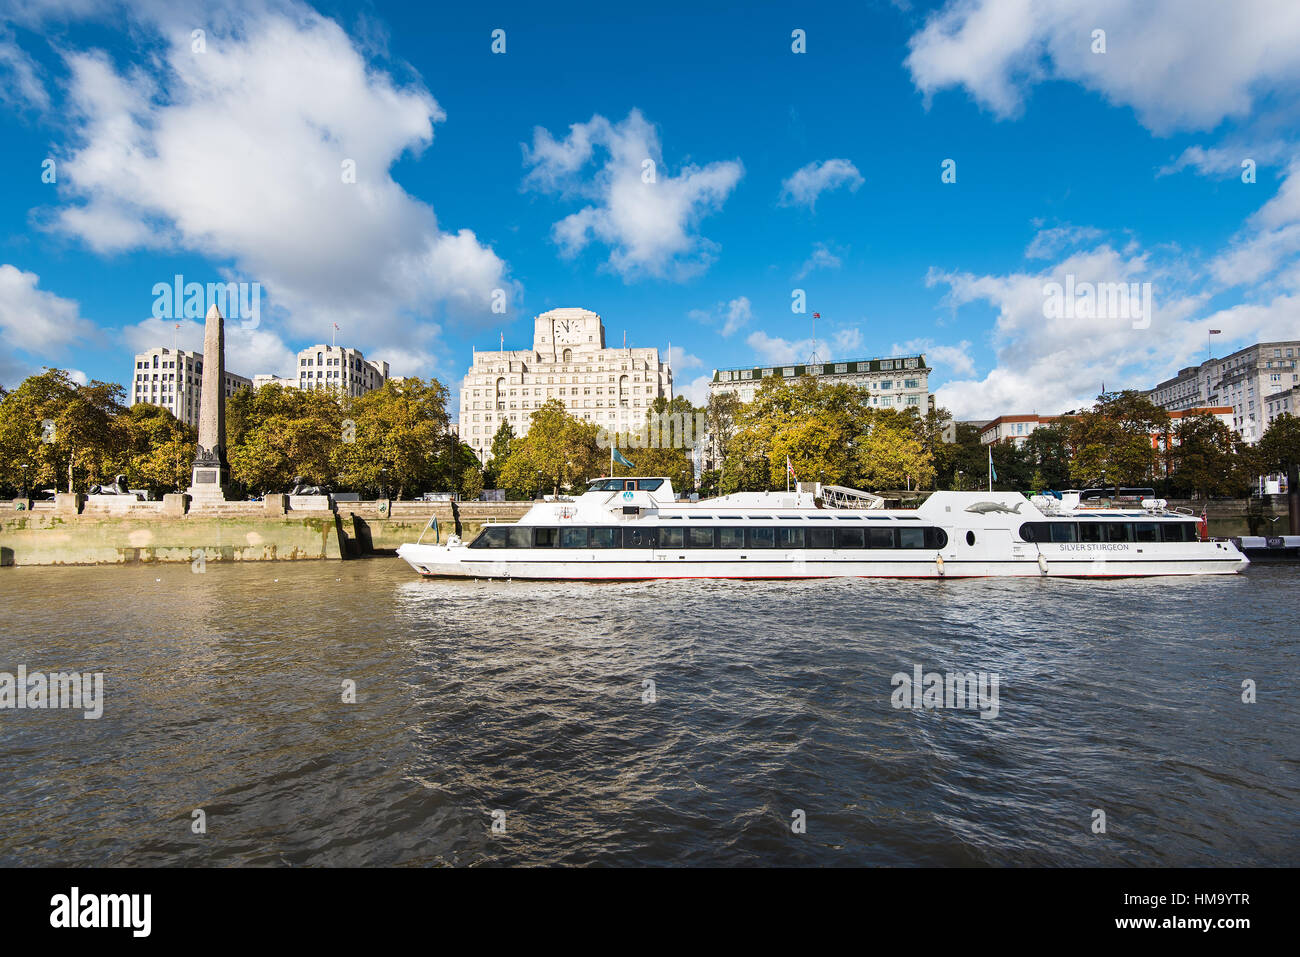 LONDON - 18. Oktober 2016: Ansicht des Victoria Embankment Kreuzfahrt-Schiff Silber Stör, Art-Deco-Shell Mex Haus und Kleopatras Nadel zeigt. Stockfoto